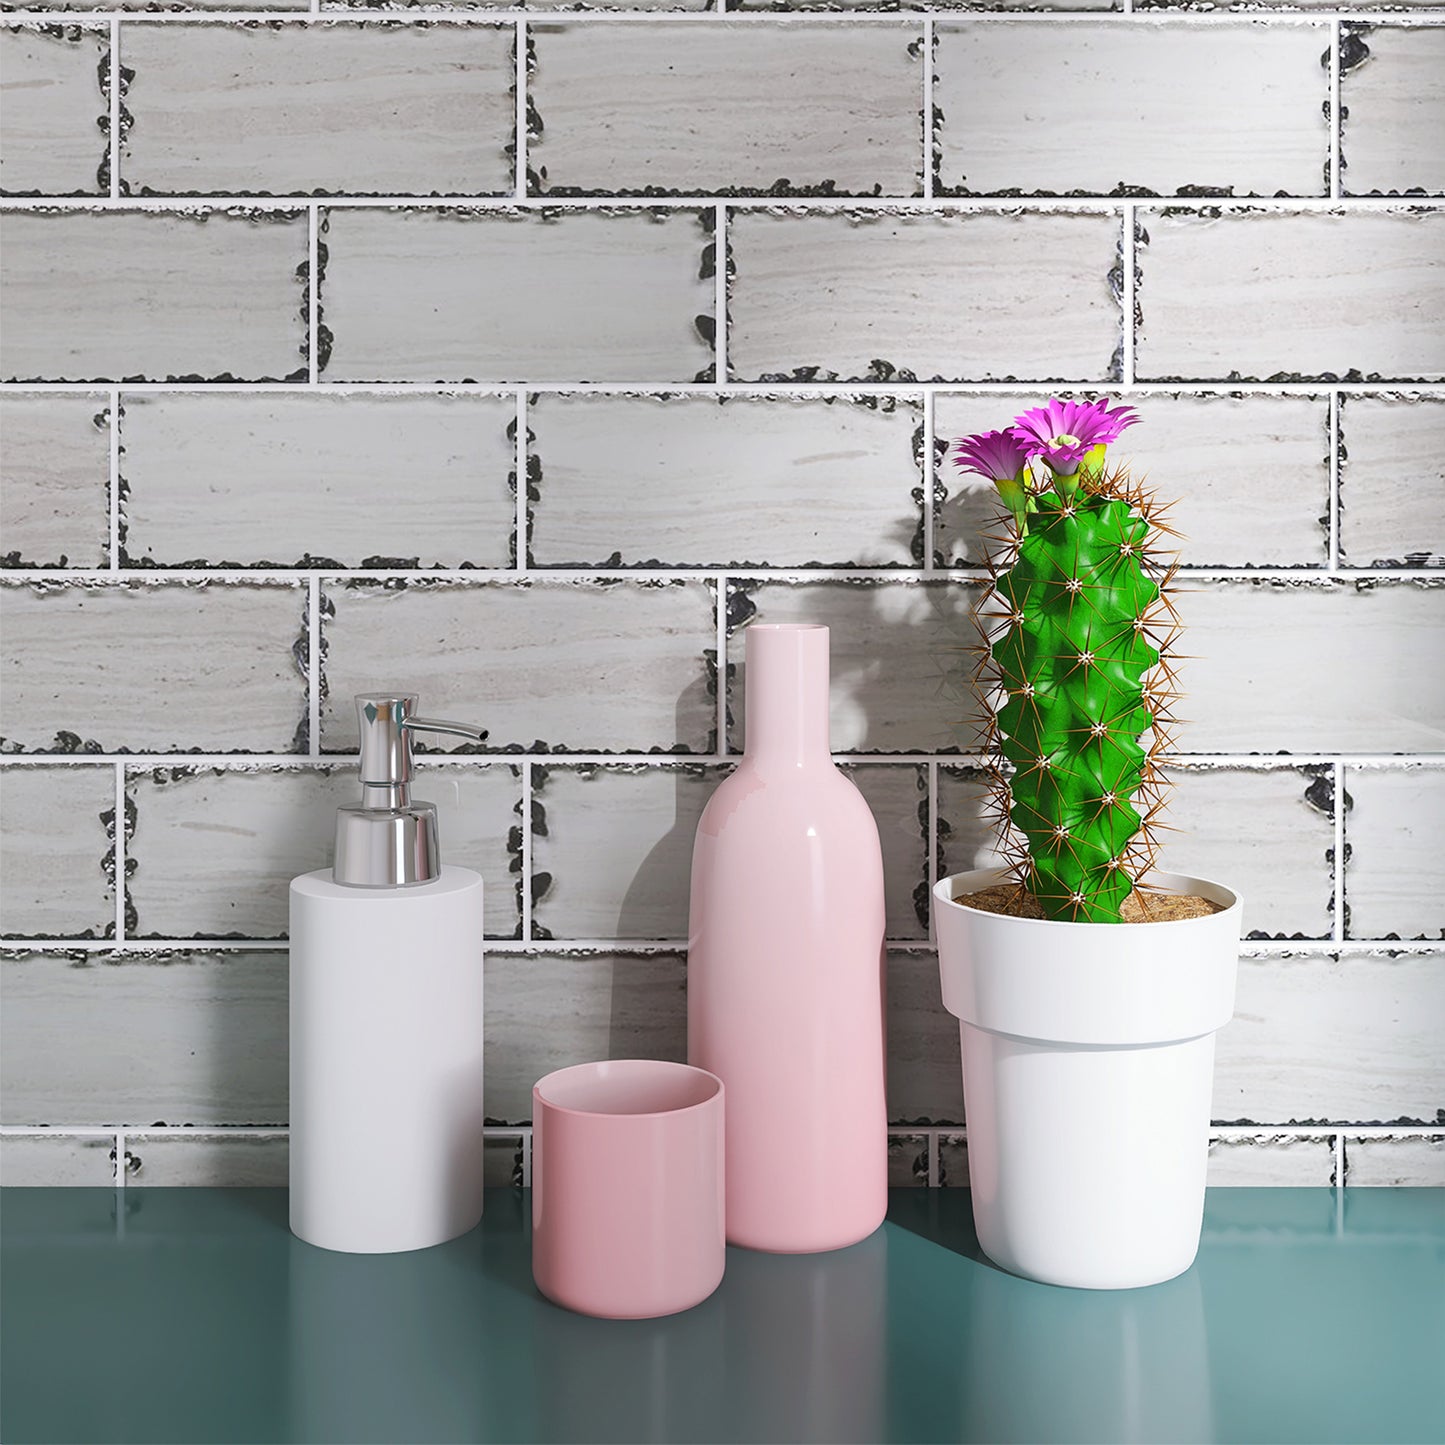 Beige backsplash tile for modern home design